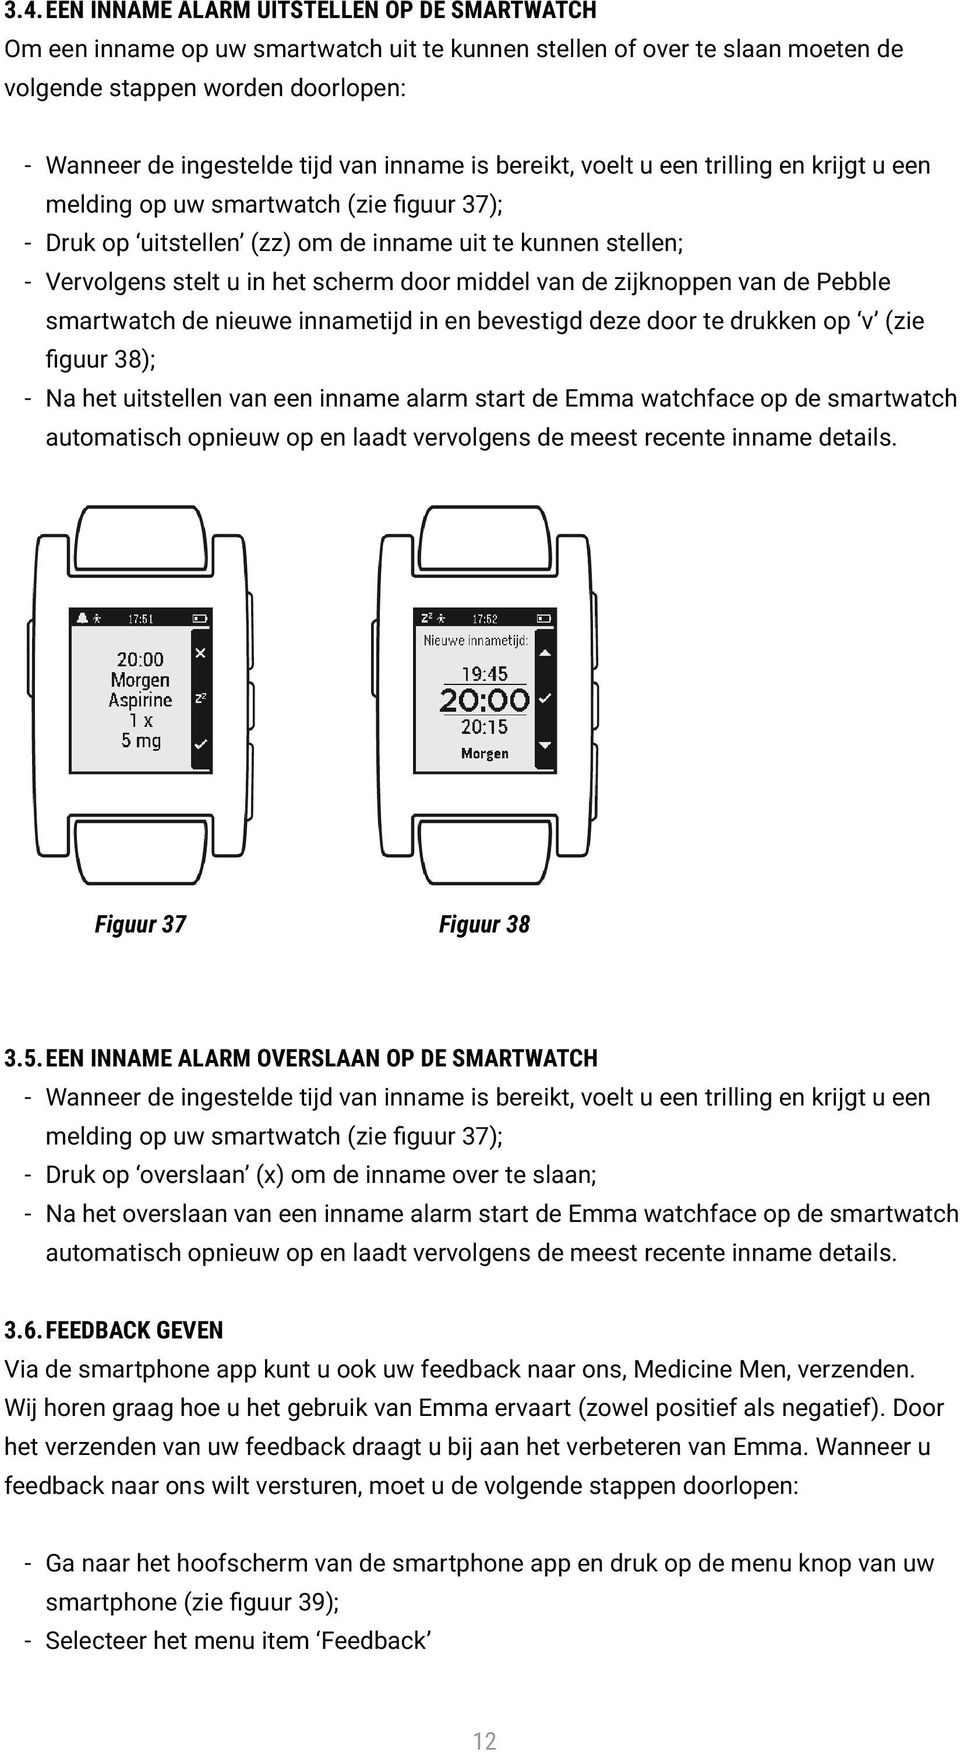 middel van de zijknoppen van de Pebble smartwatch de nieuwe innametijd in en bevestigd deze door te drukken op v (zie figuur 38); - Na het uitstellen van een inname alarm start de Emma watchface op